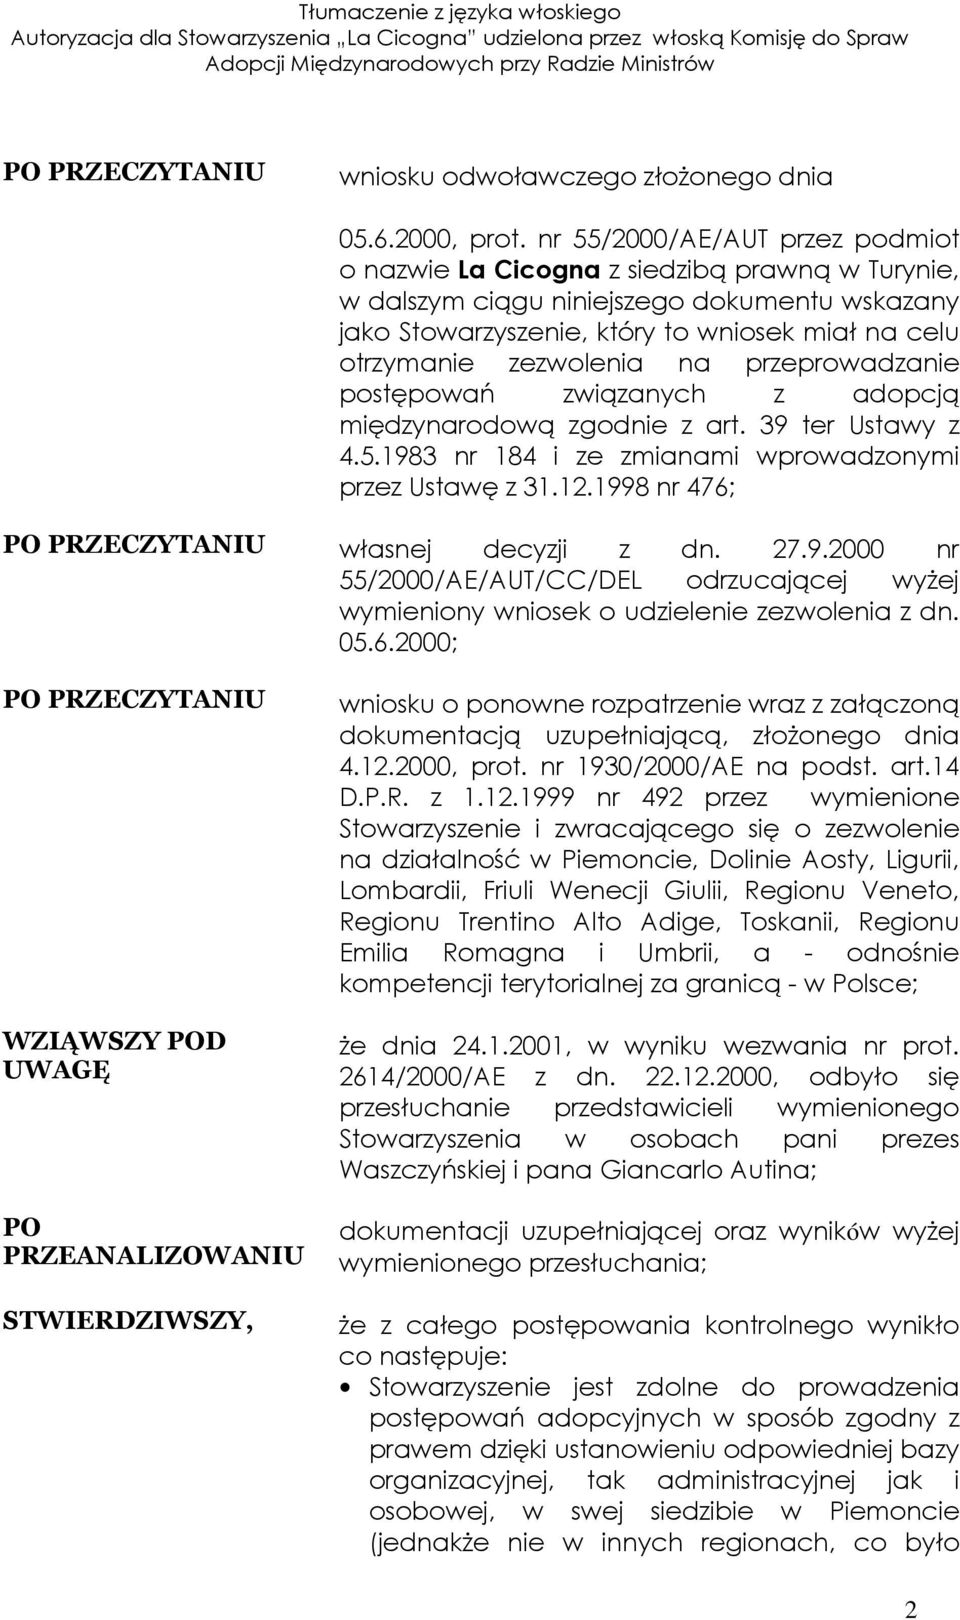 nr 55/2000/AE/AUT przez podmiot o nazwie La Cicogna z siedzibą prawną w Turynie, w dalszym ciągu niniejszego dokumentu wskazany jako Stowarzyszenie, który to wniosek miał na celu otrzymanie